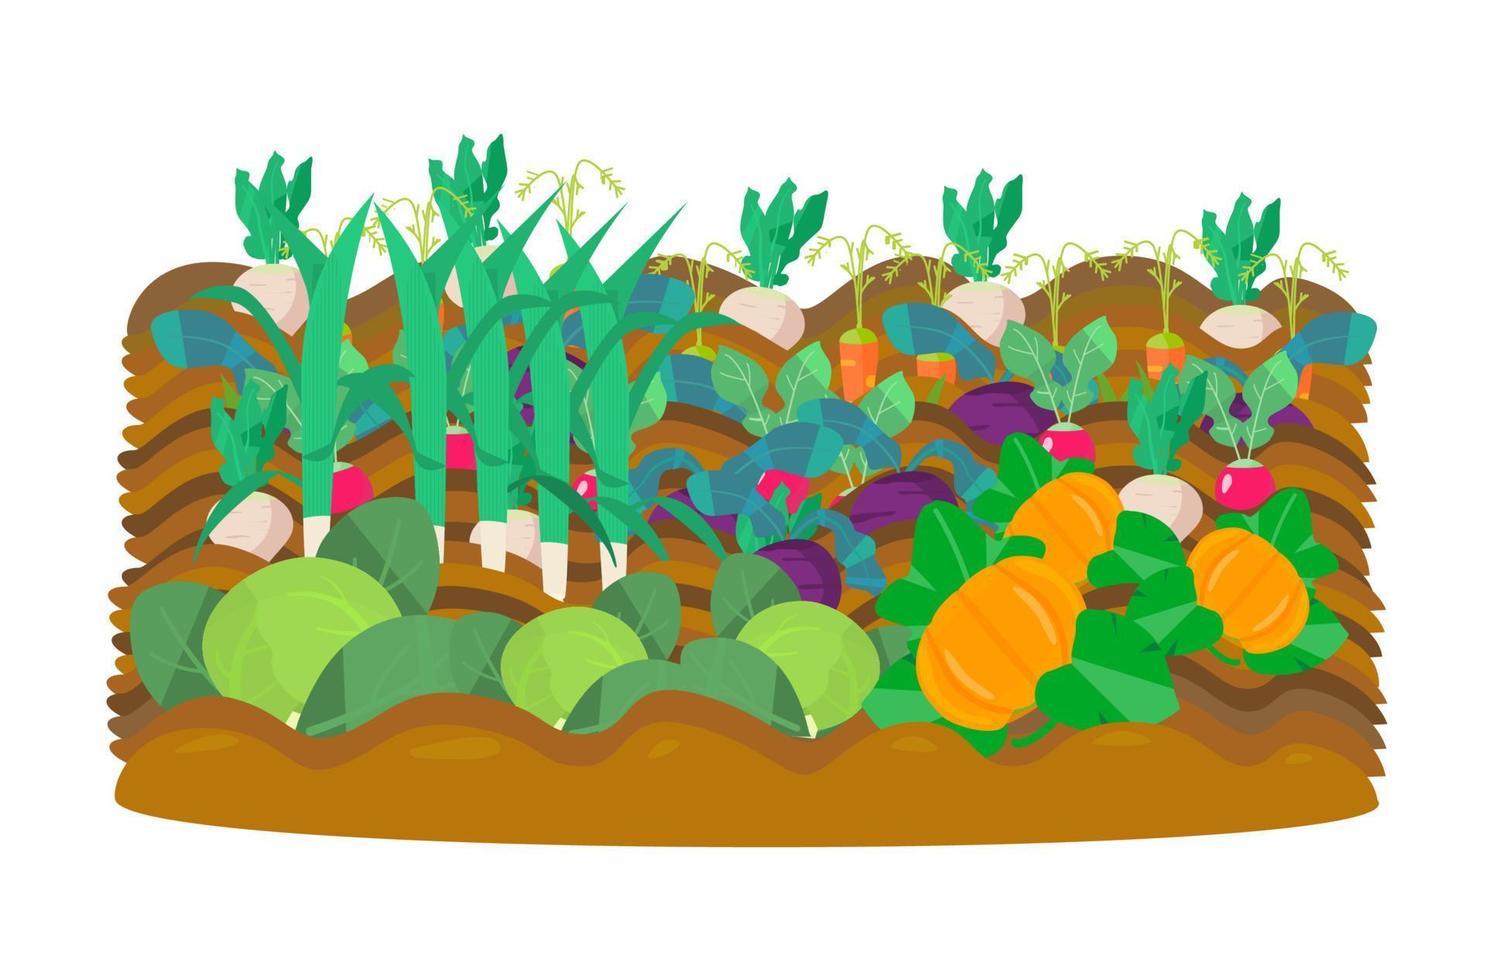 Vectot Illustration des Gemüsegartens. Rettich, Rüben, Radieschen, Karotten, Kohl, Kürbisse, Lauch. Ernte. vektor